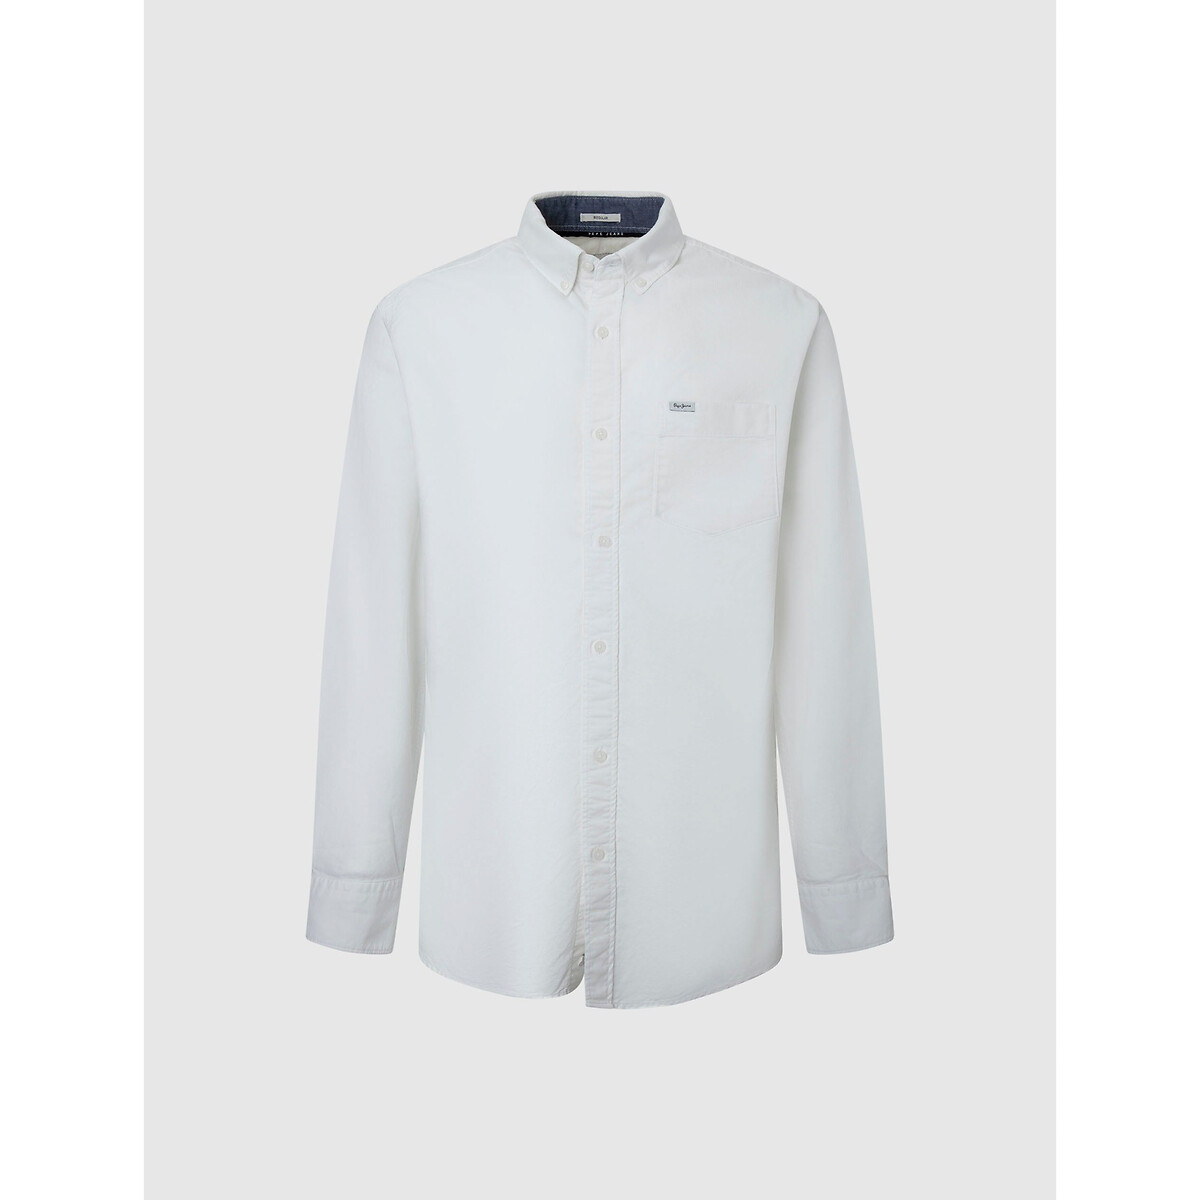 Рубашка Из ткани оксфорд воротник на пуговицах L белый LaRedoute, размер L - фото 4